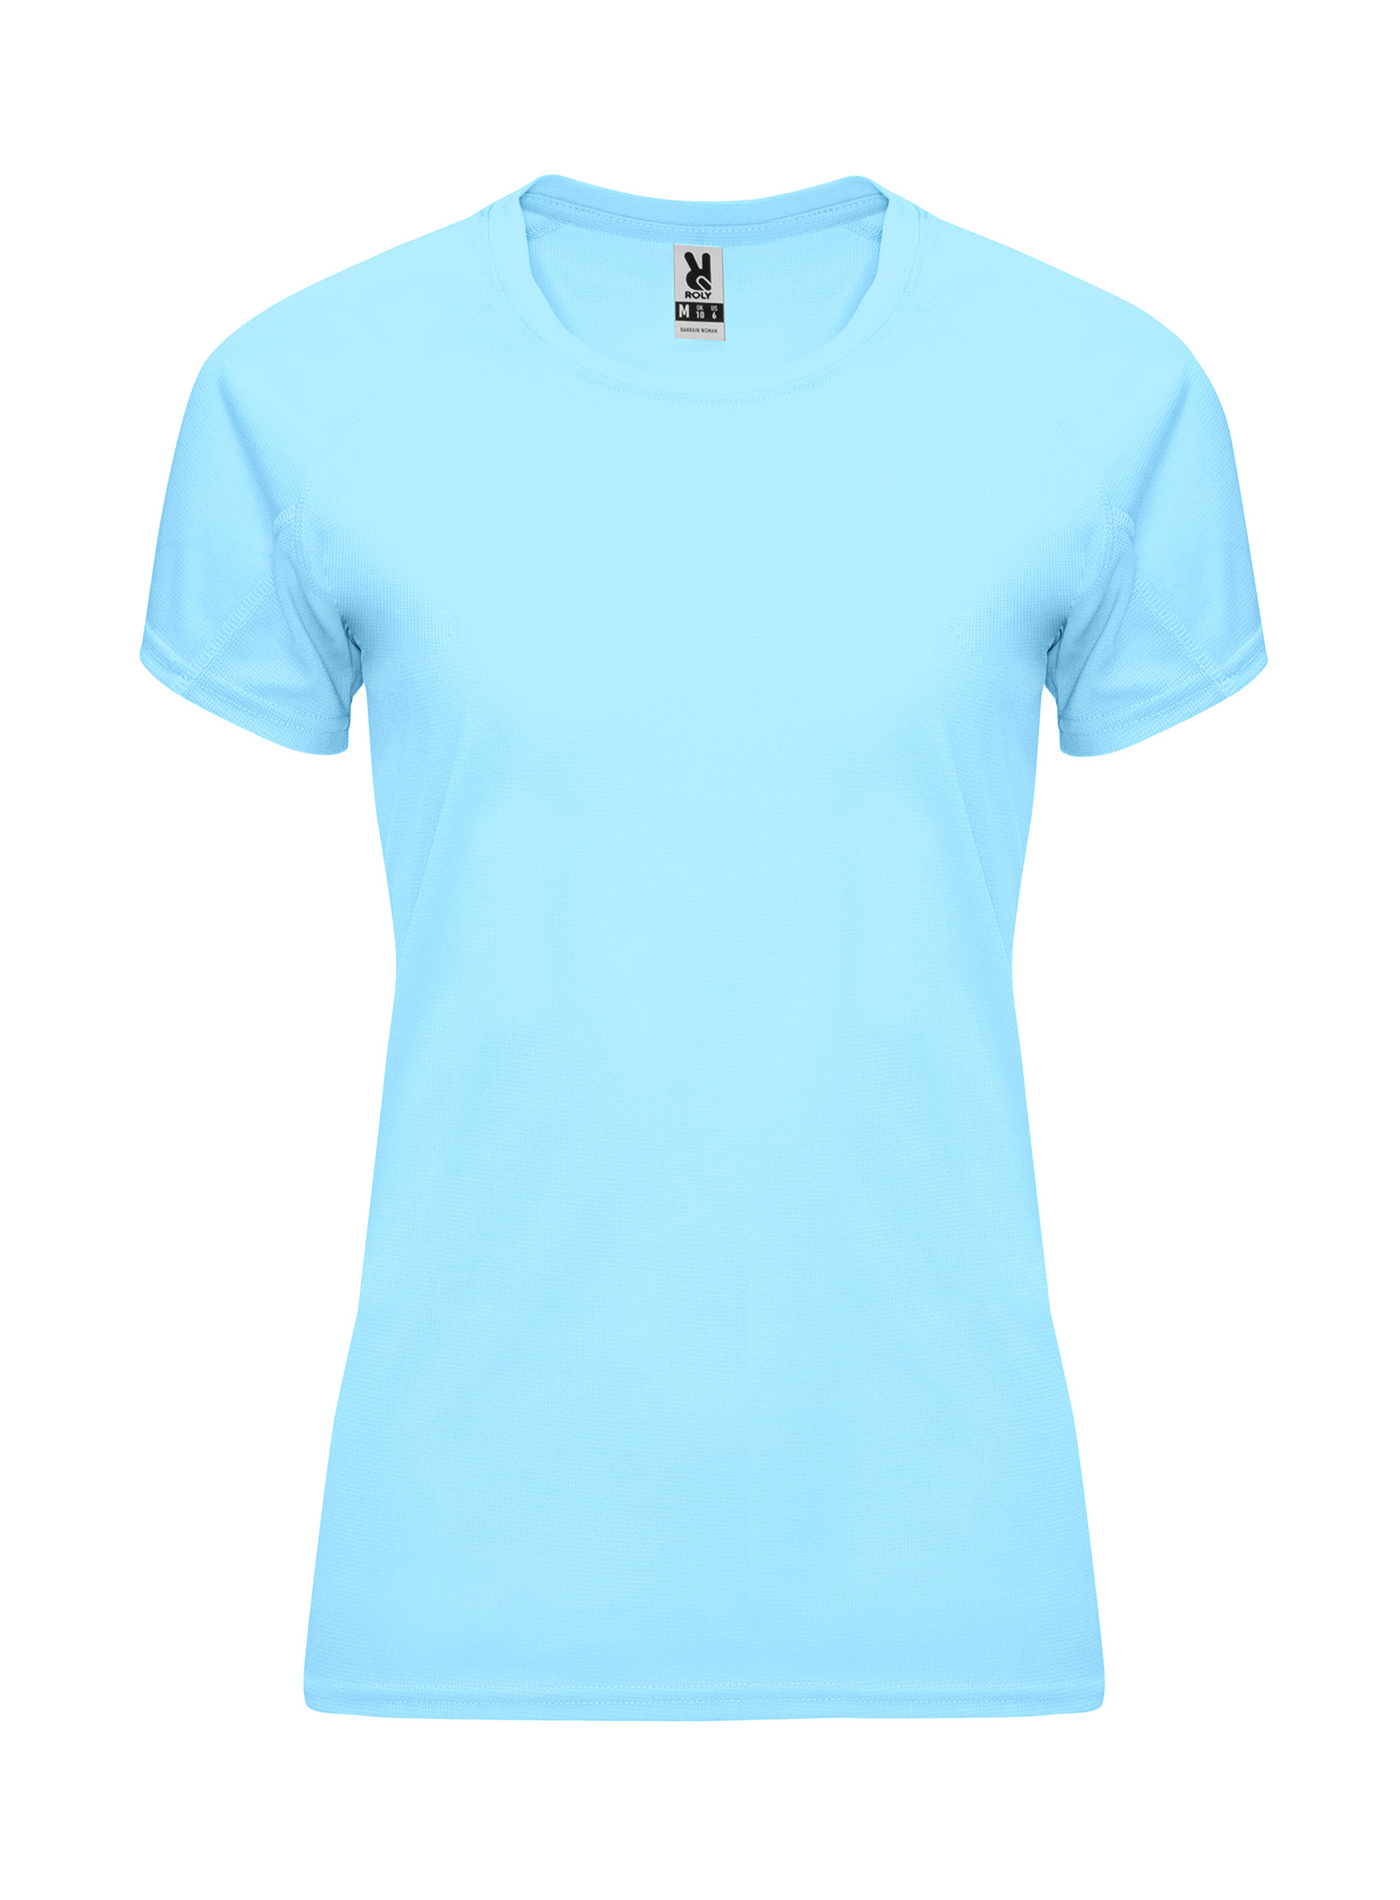 Dámské sportovní tričko Roly Bahrain - Blankytně modrá S